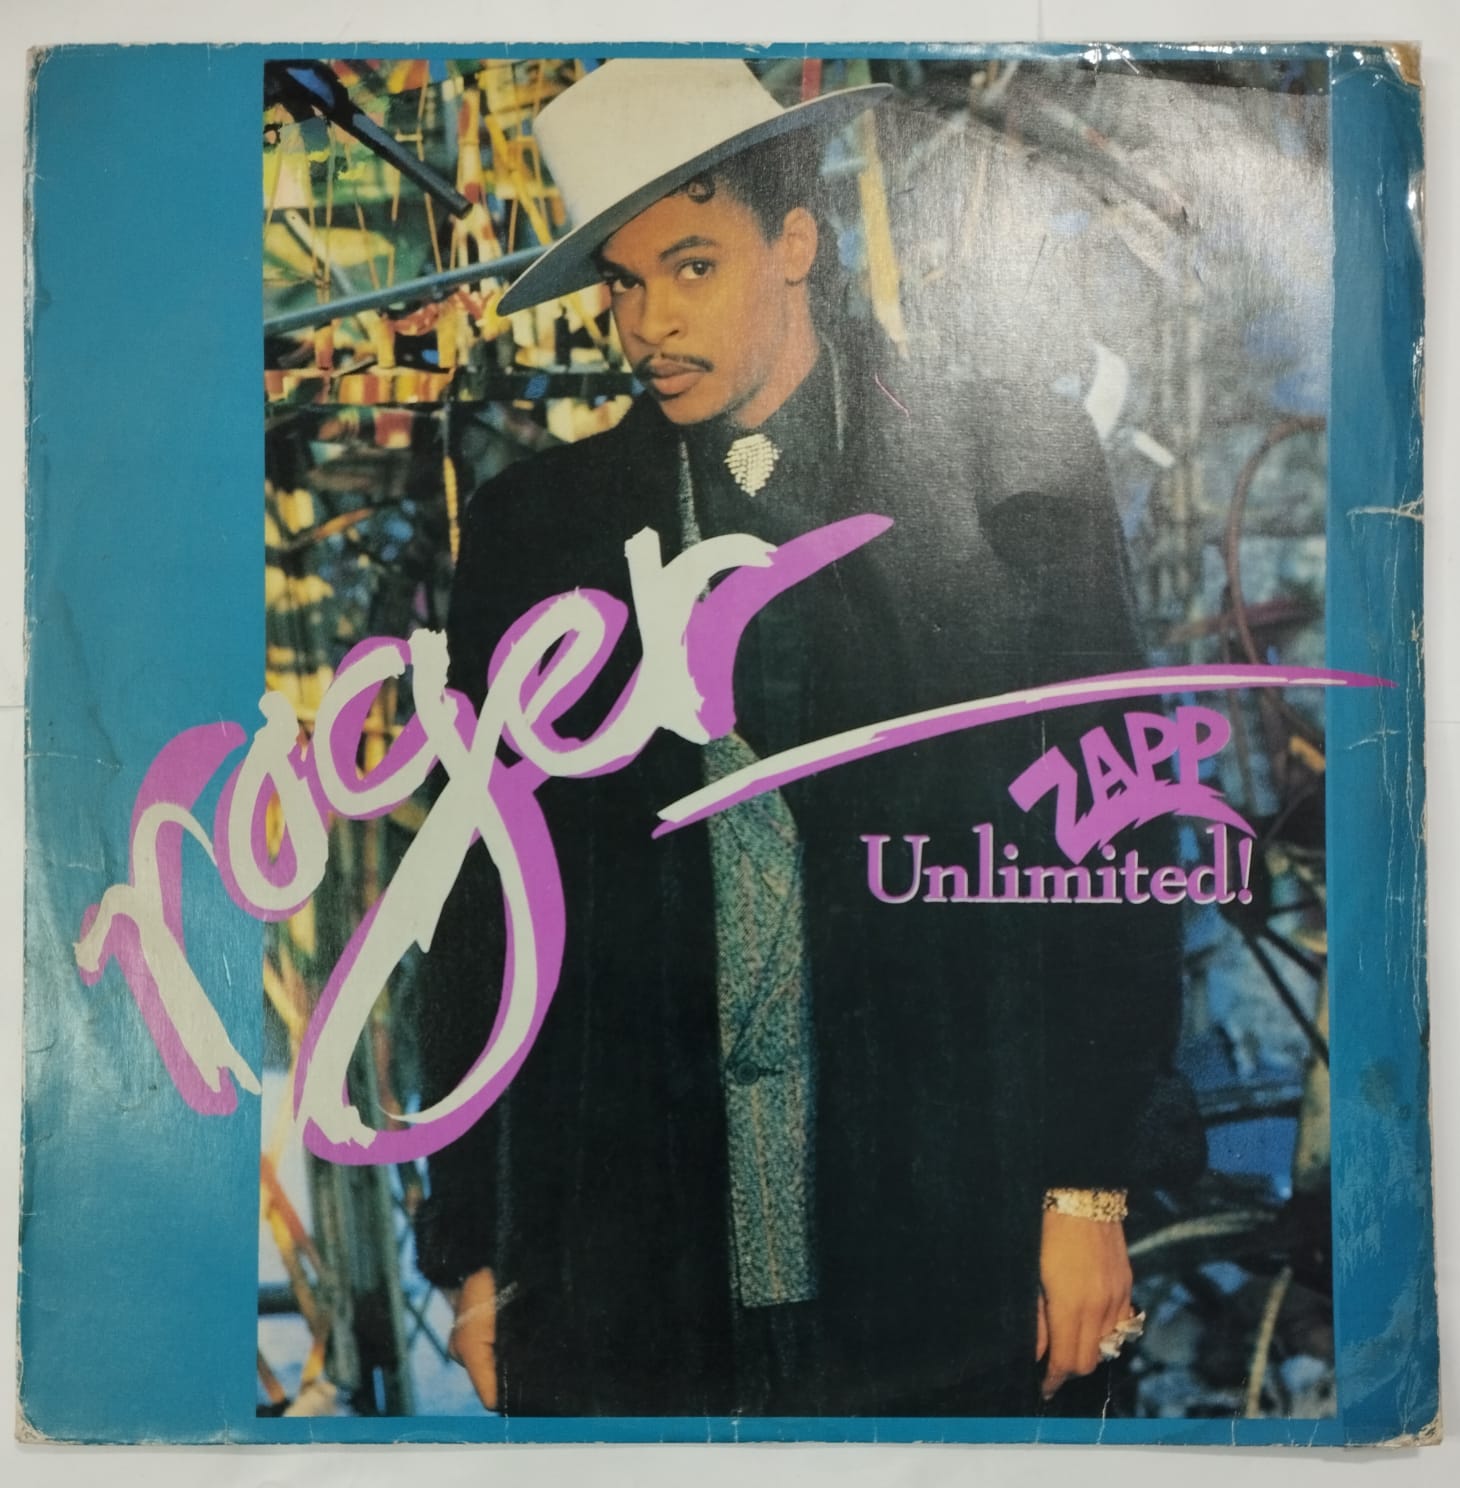 Roger - Unlimited! (Álbum)